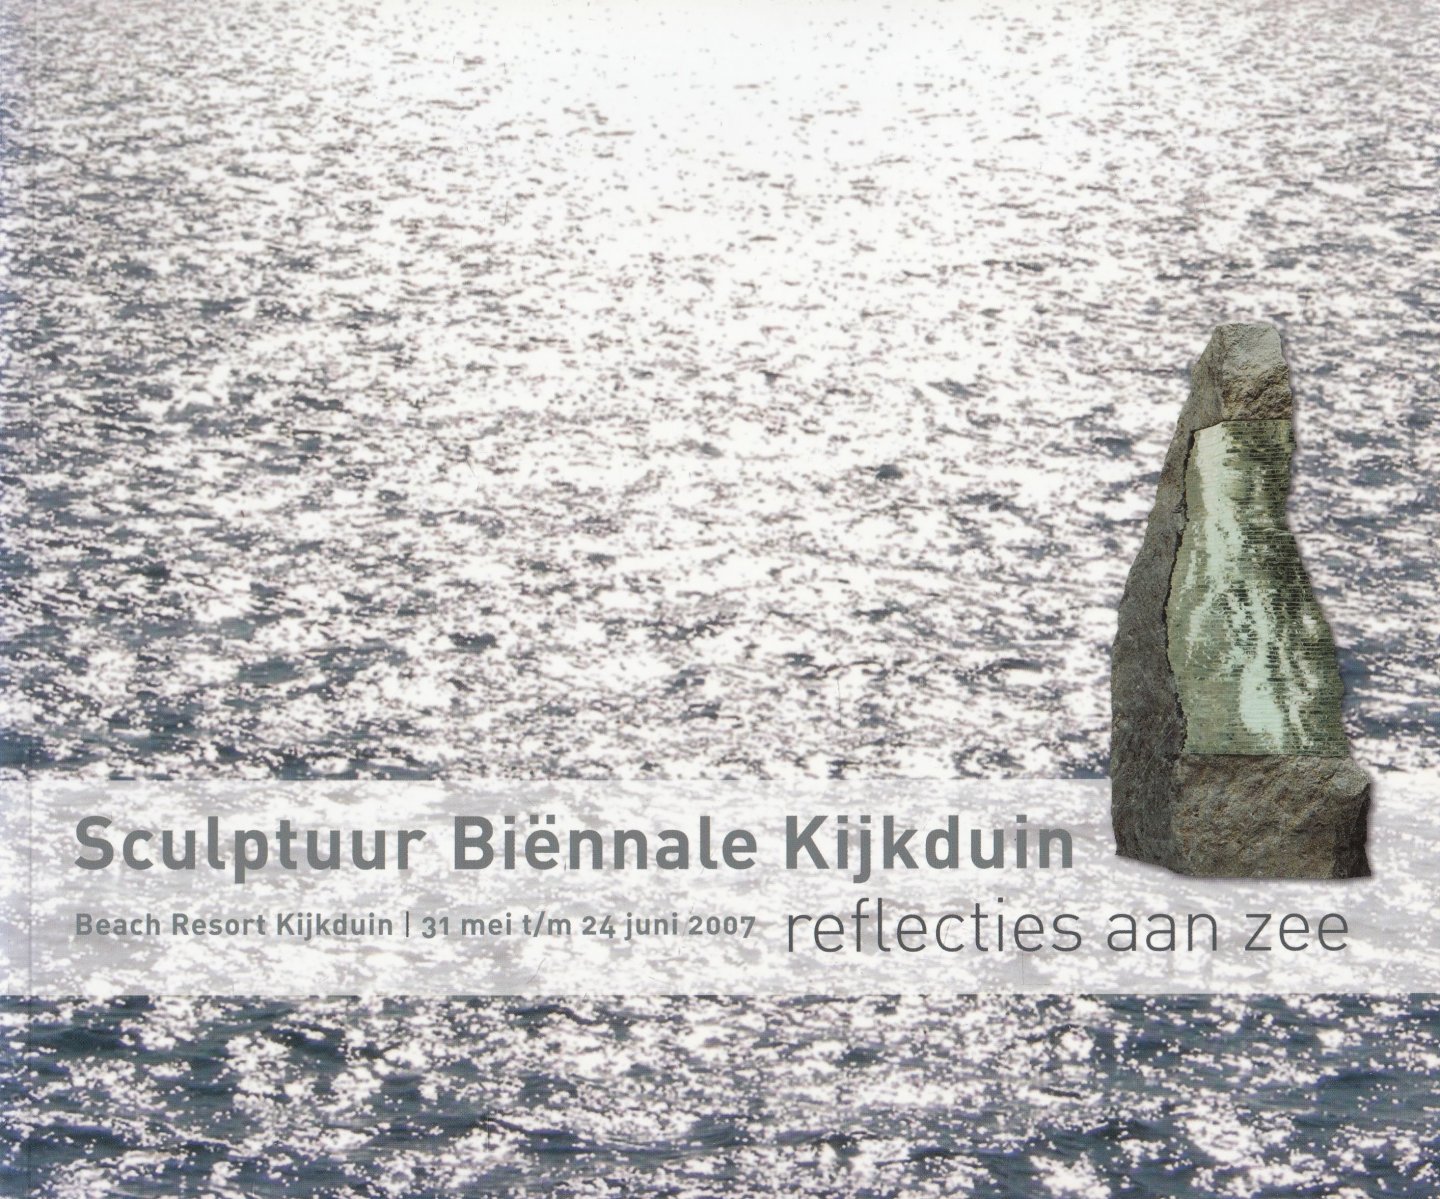 Deetman, W.J...  et al.; Burght, Angela van der..et al. - Sculptuur biënnale Kijkduin : reflecties aan zee